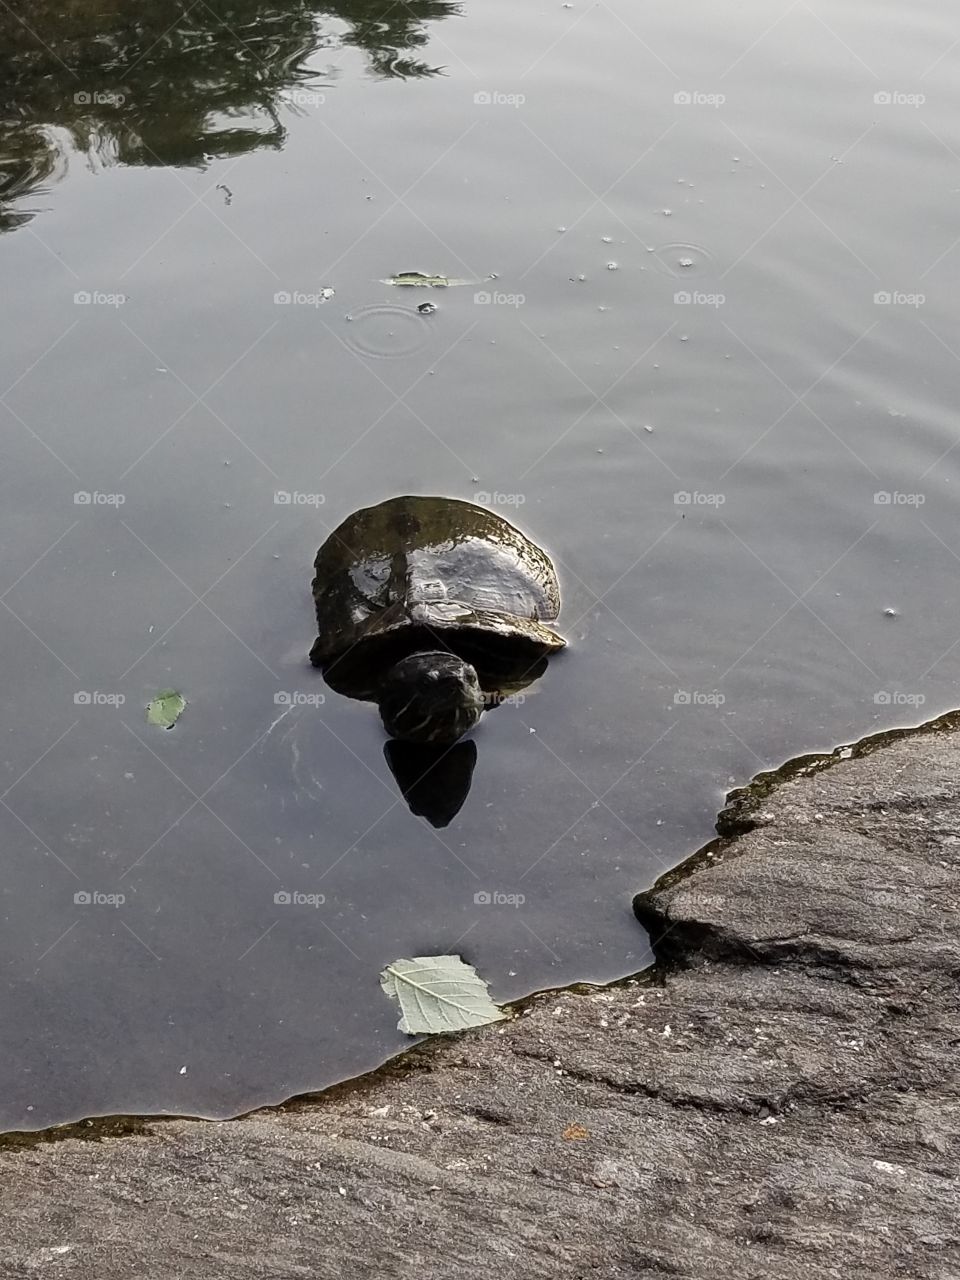 turtles at turtle pond